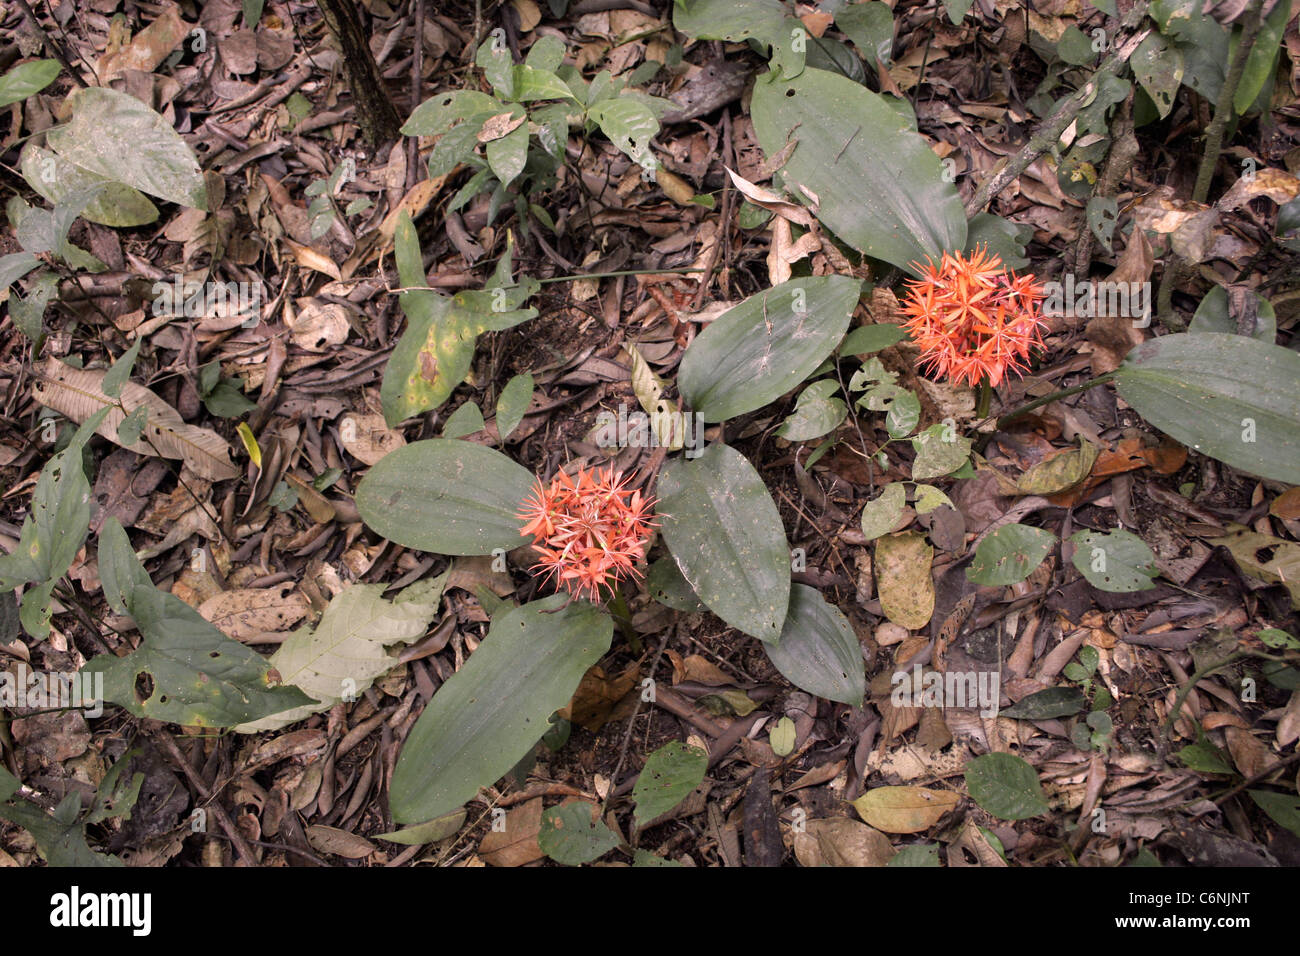 Wald-Feuerball Lilien (Scadoxus Cinnabarinus: Liliaceae) im Regenwald von Kamerun. Stockfoto